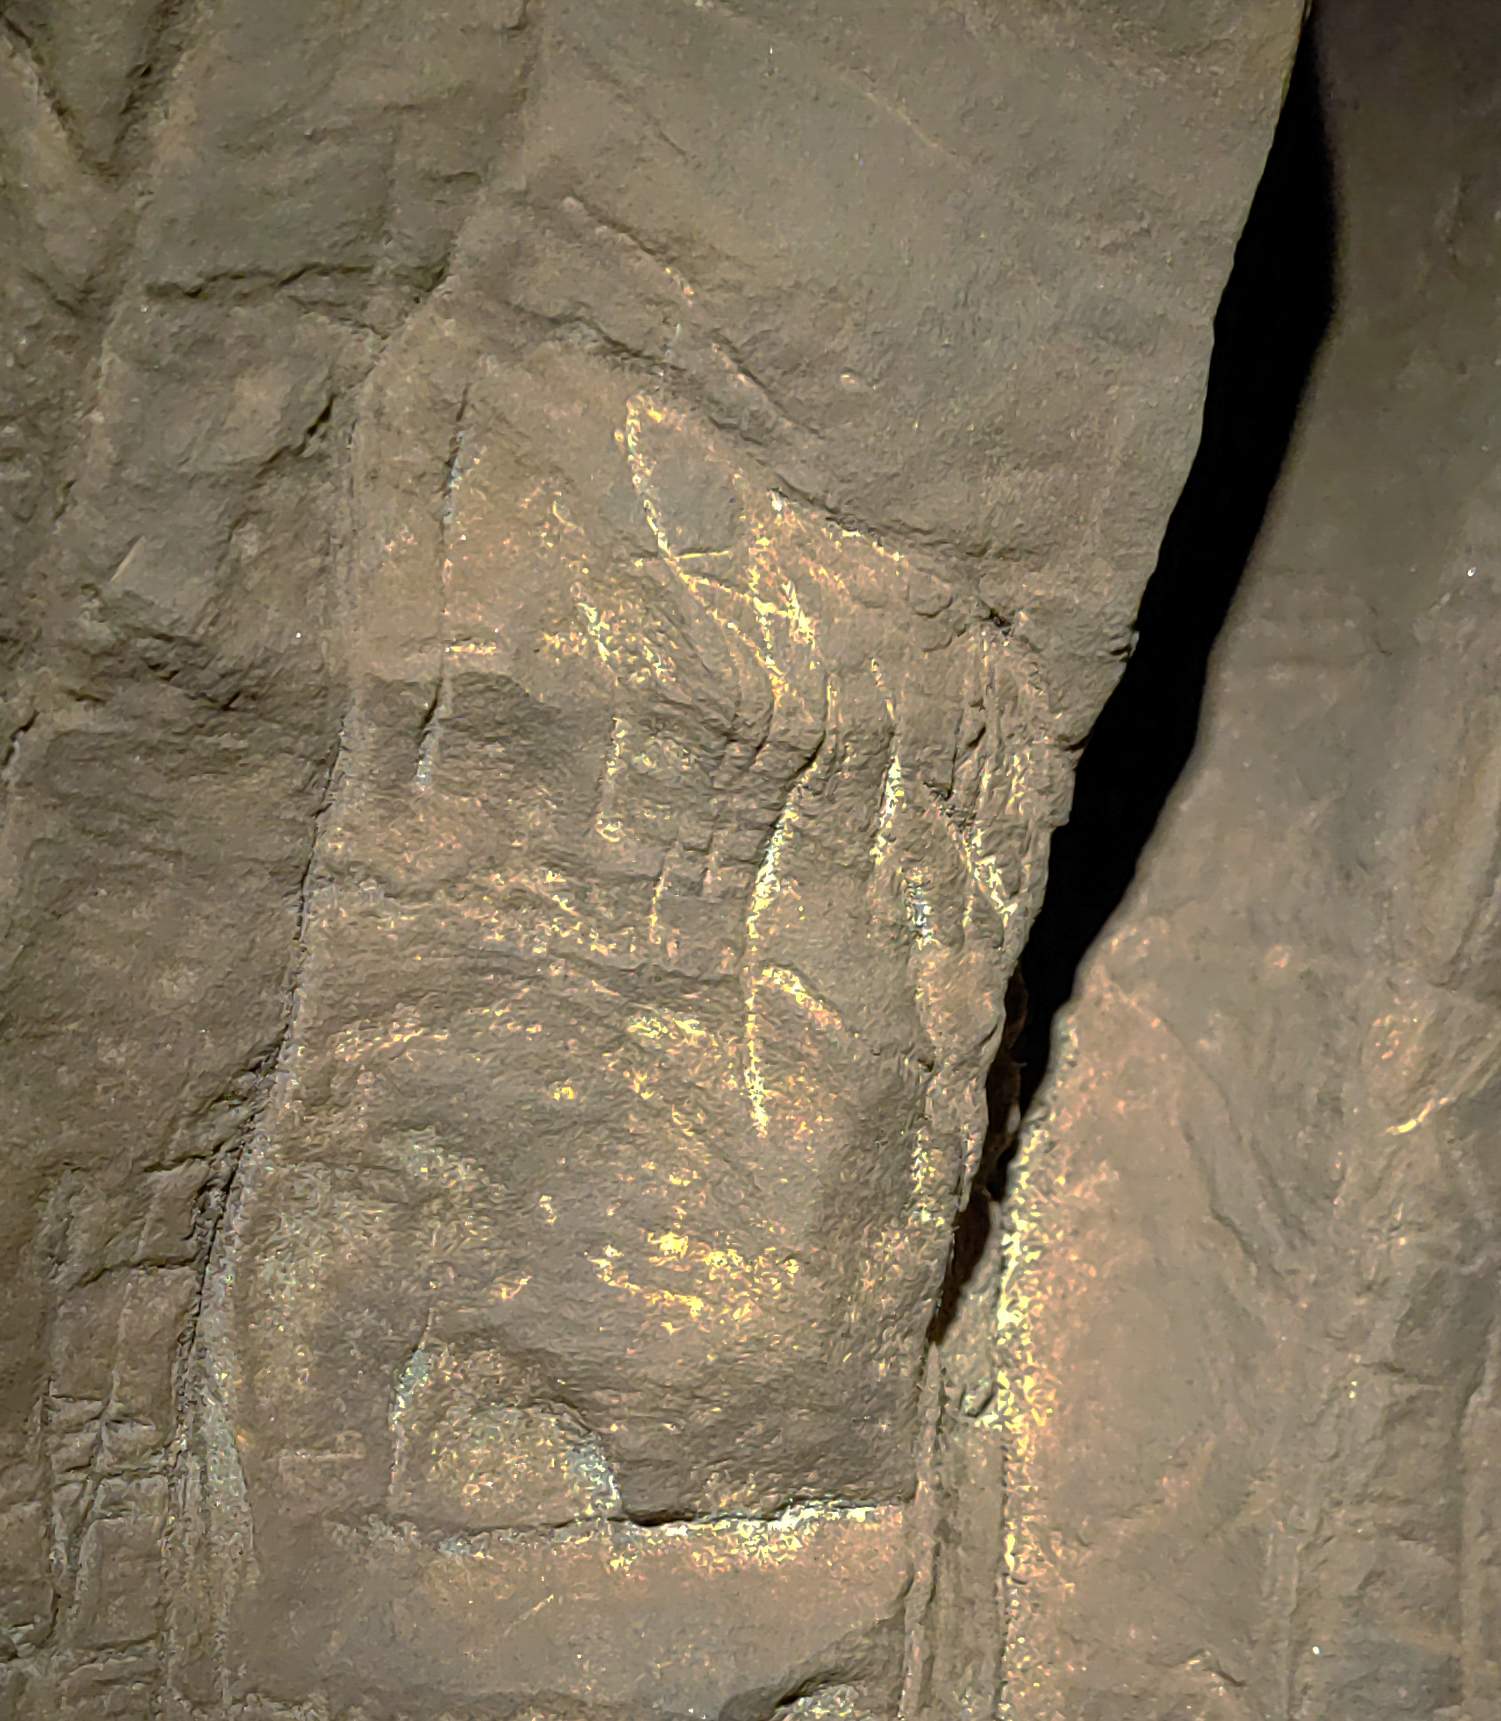 Các hình chạm khắc được tìm thấy trong phòng chôn cất Hill Antechamber, chẳng hạn như hình chữ thập lộn ngược. Ngoài ra còn có một vật liệu được áp dụng trên bề mặt để làm nổi bật các hình ảnh phi hình học trong điều kiện ánh sáng yếu, mặc dù điều này vẫn chưa được phân tích.